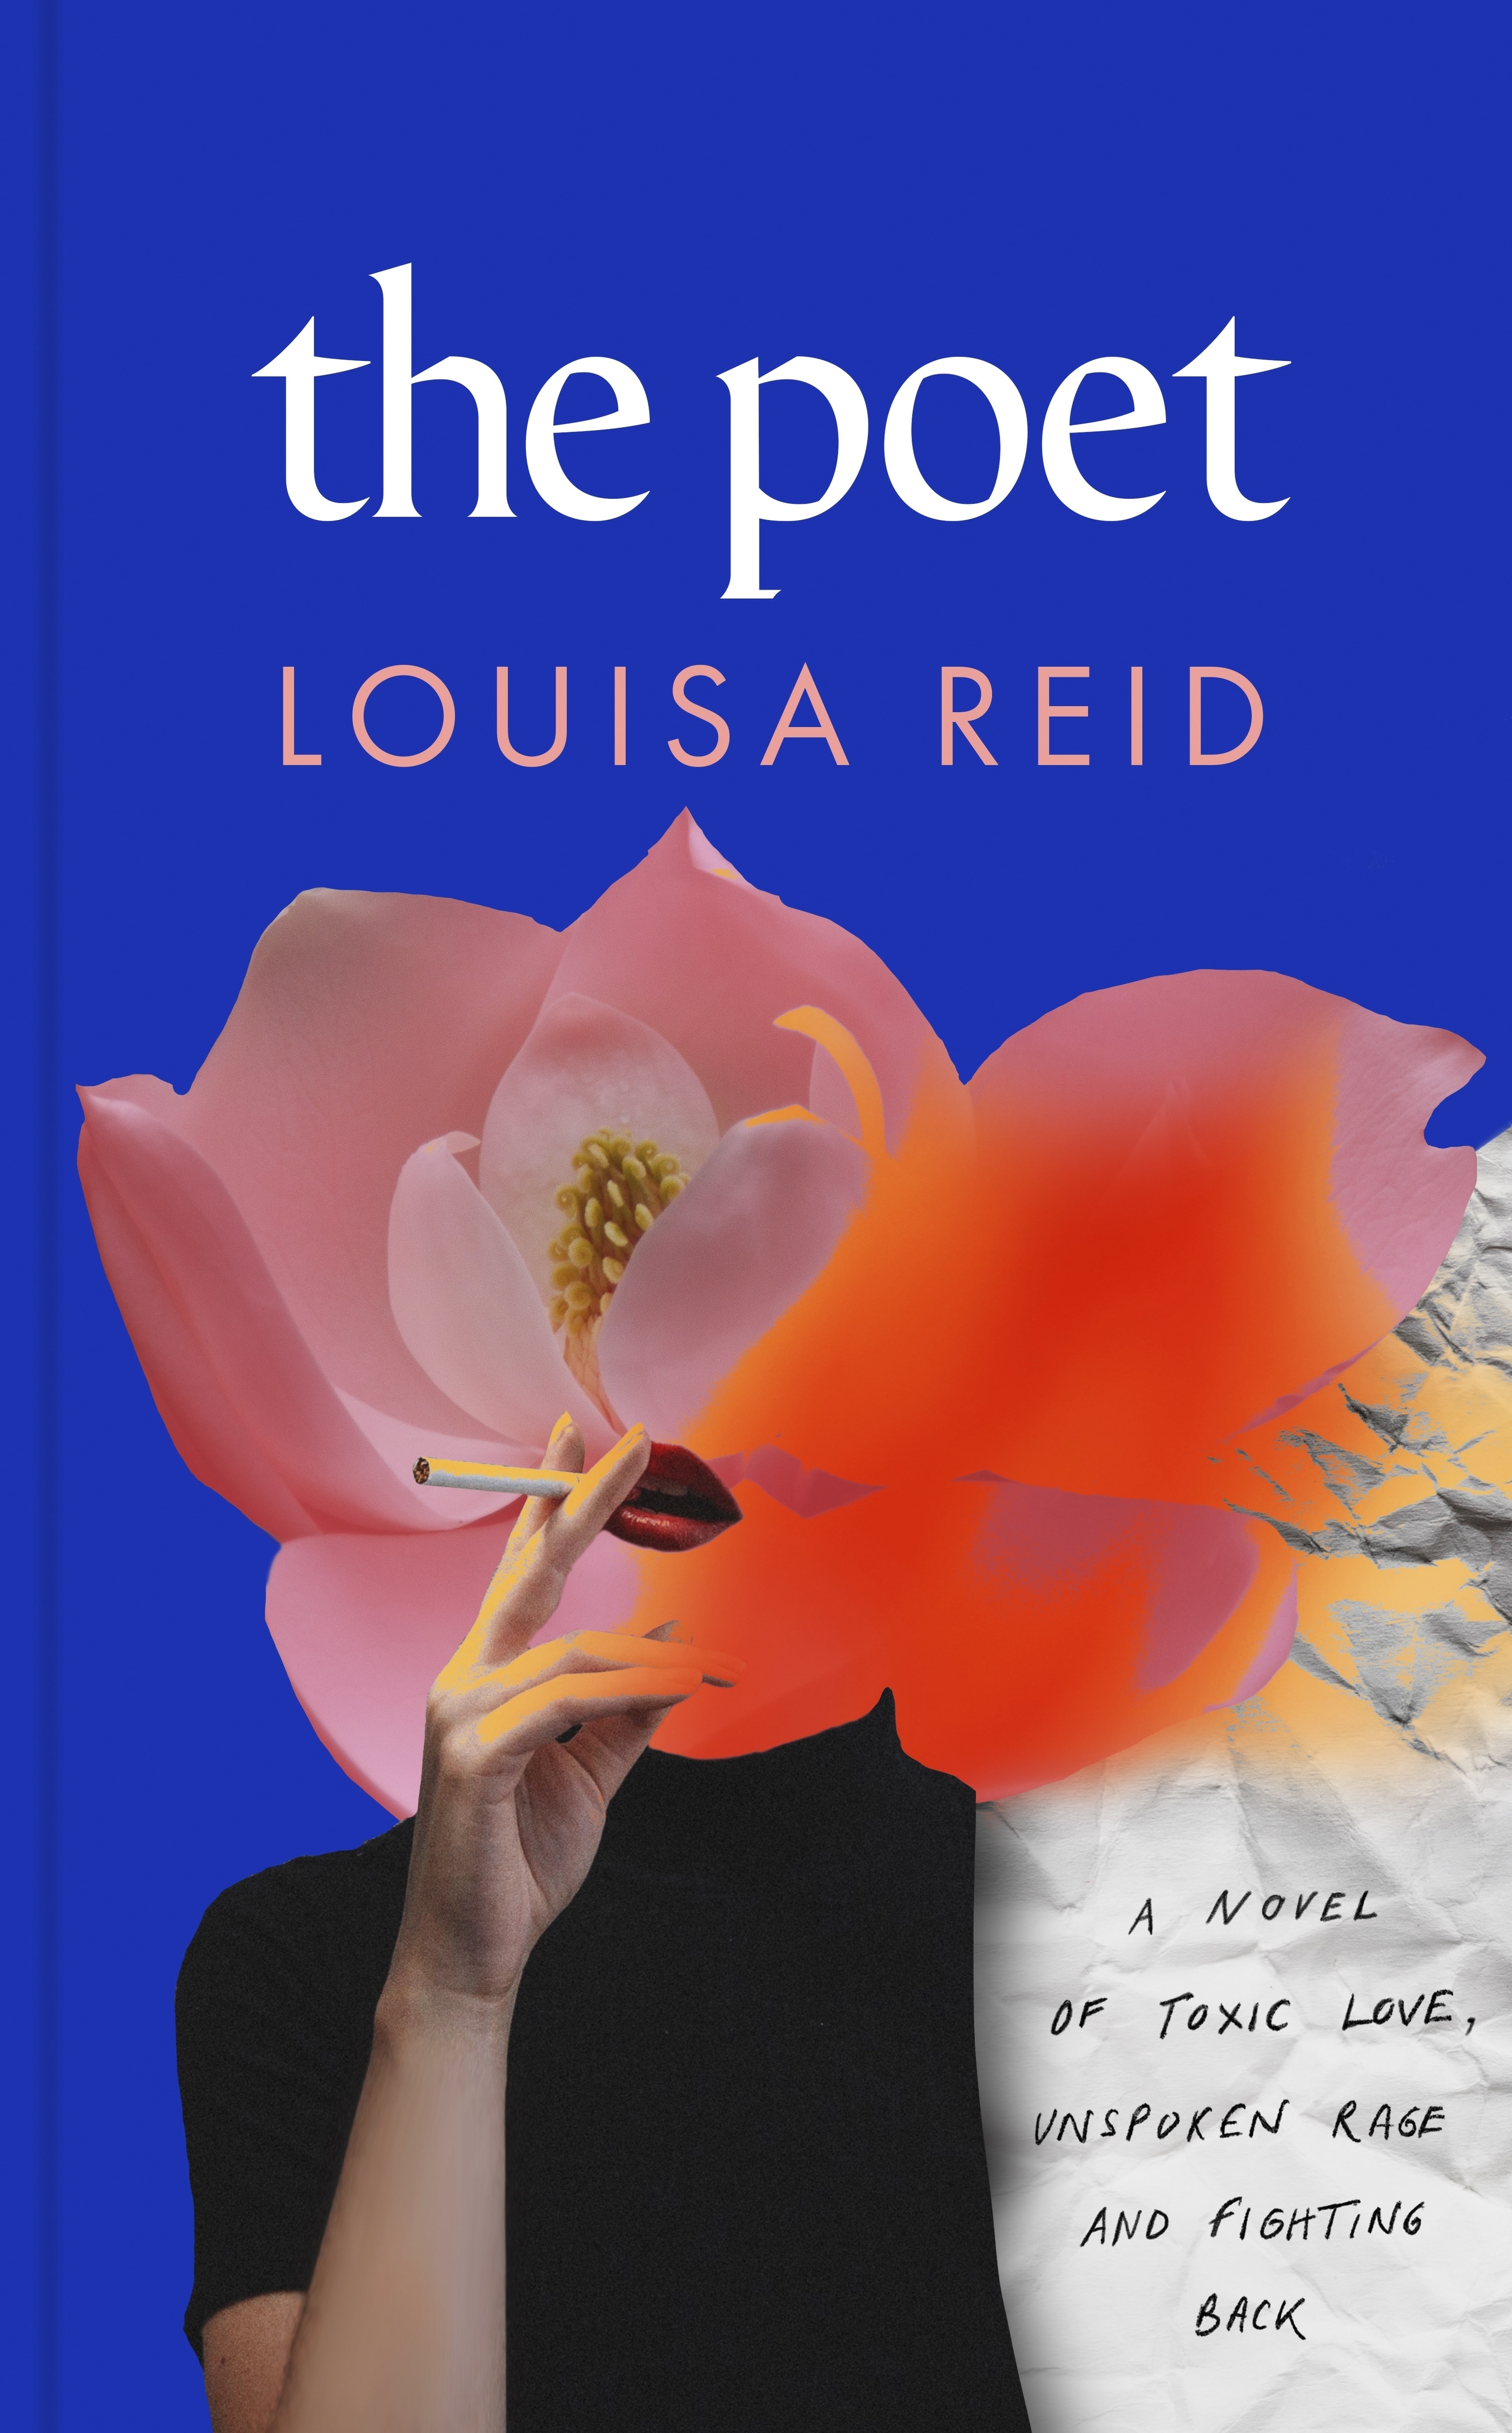 Book “The Poet” by Louisa Reid — June 2, 2022